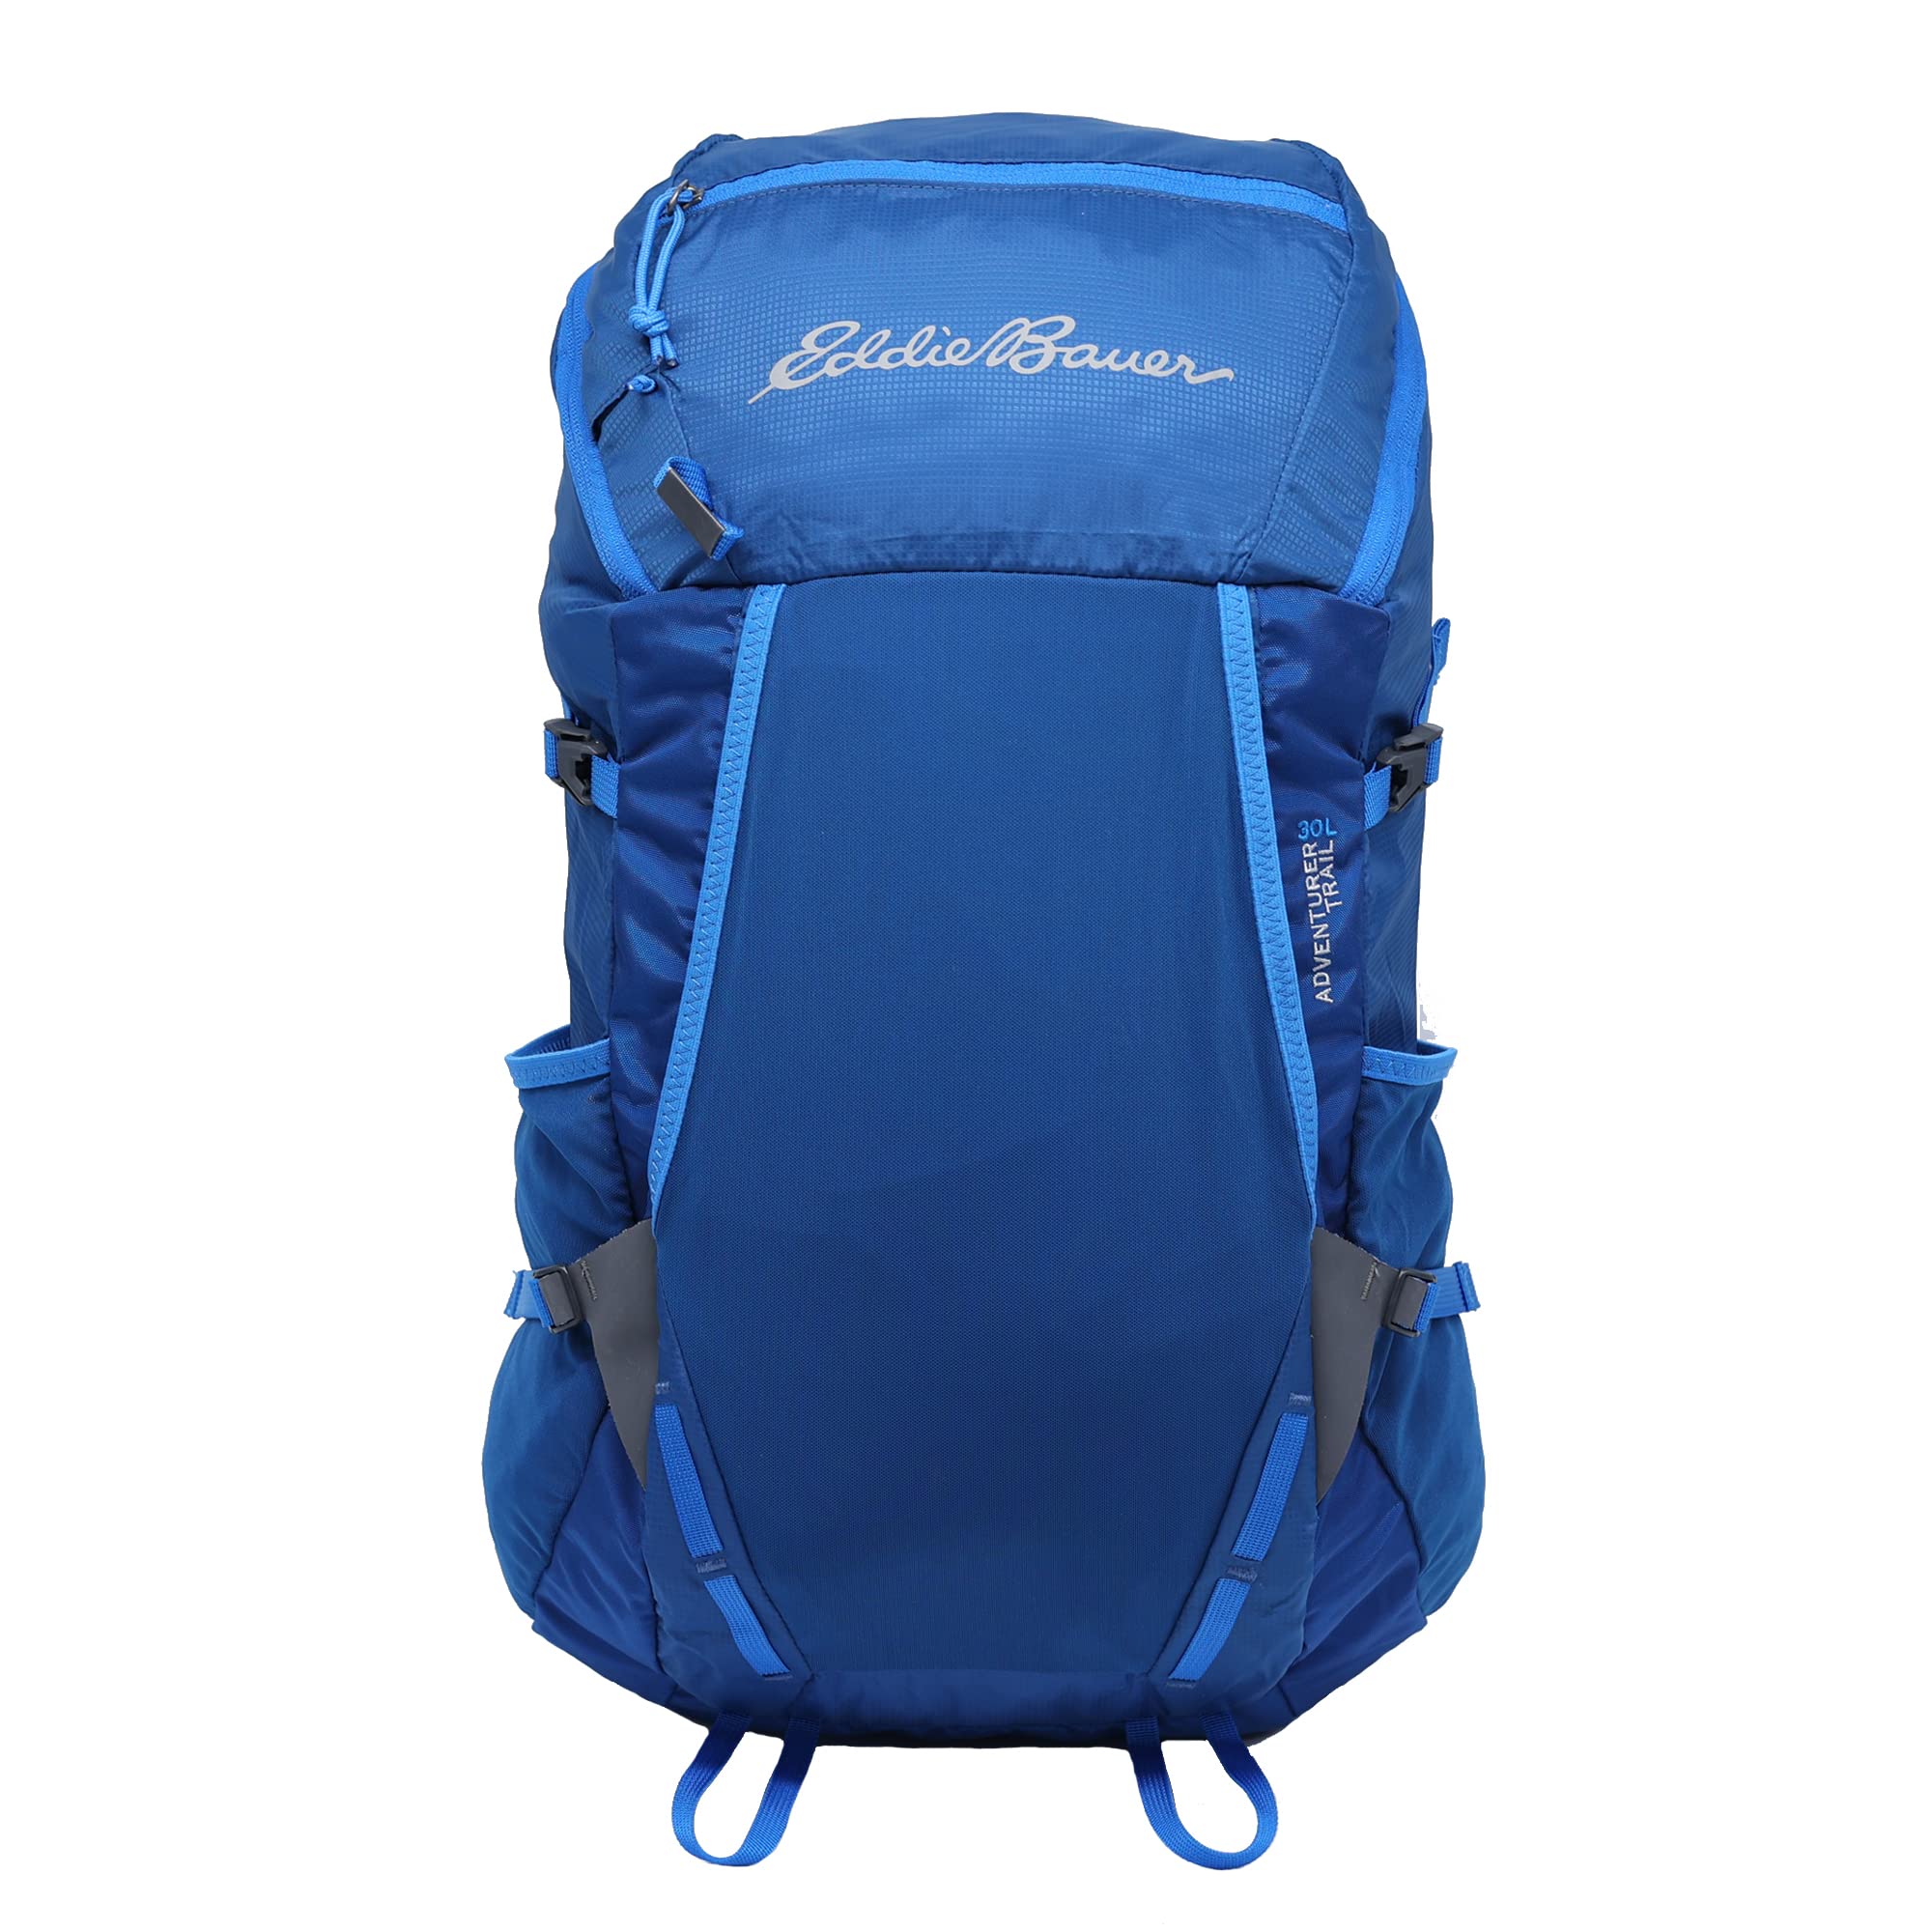 Eddie Bauer Adventurer Trail 30L Backpack with Interior Hydration Bladder Sleeve, True Blue